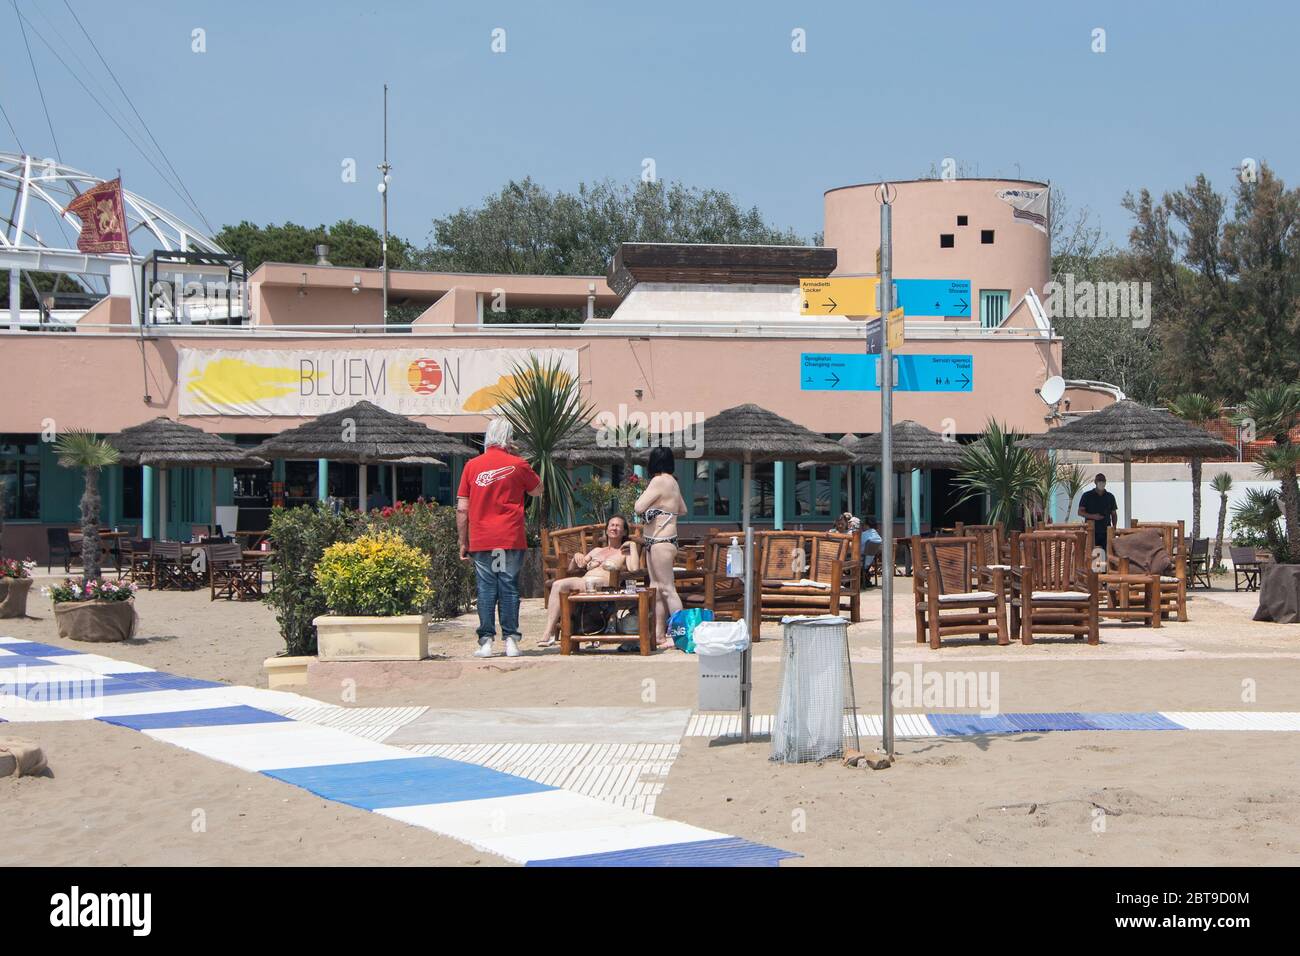 VENISE, ITALIE - MAI: Les gens sont vus comme des plages rouvrent à Lido le 23 mai 2020 à Venise, Italie. Les plages de la région de Vénétie ont rouvert, sous réserve de cela Banque D'Images